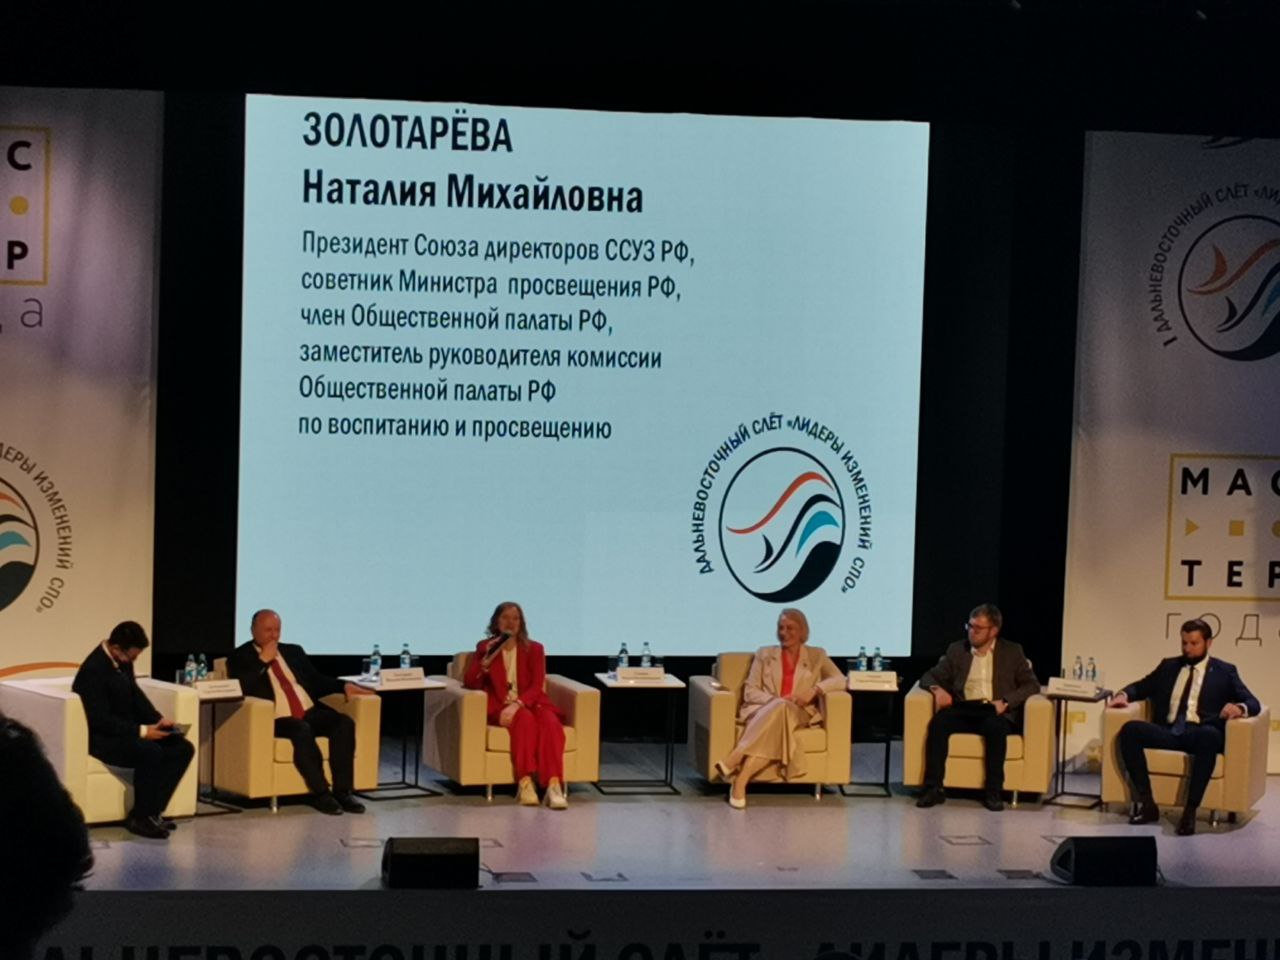 Команда из Кузбасса приняла участие в слете «Лидеры изменений СПО» во Владивостоке